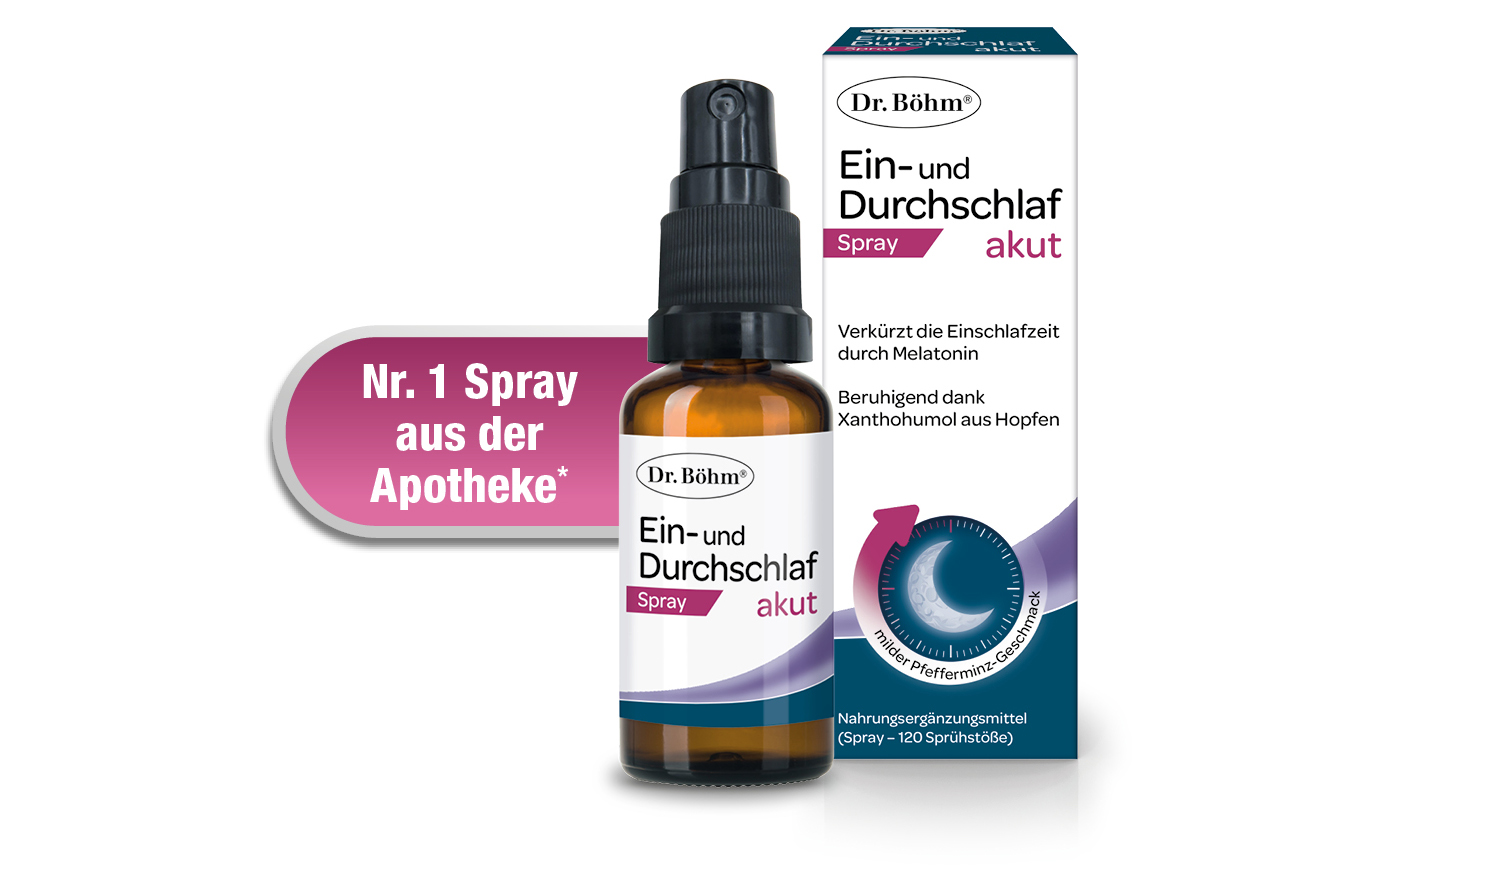 Dr. Böhm® Ein- und Durchschlaf akut Spray - verkürzt die Einschlafzeit durch Melatonin